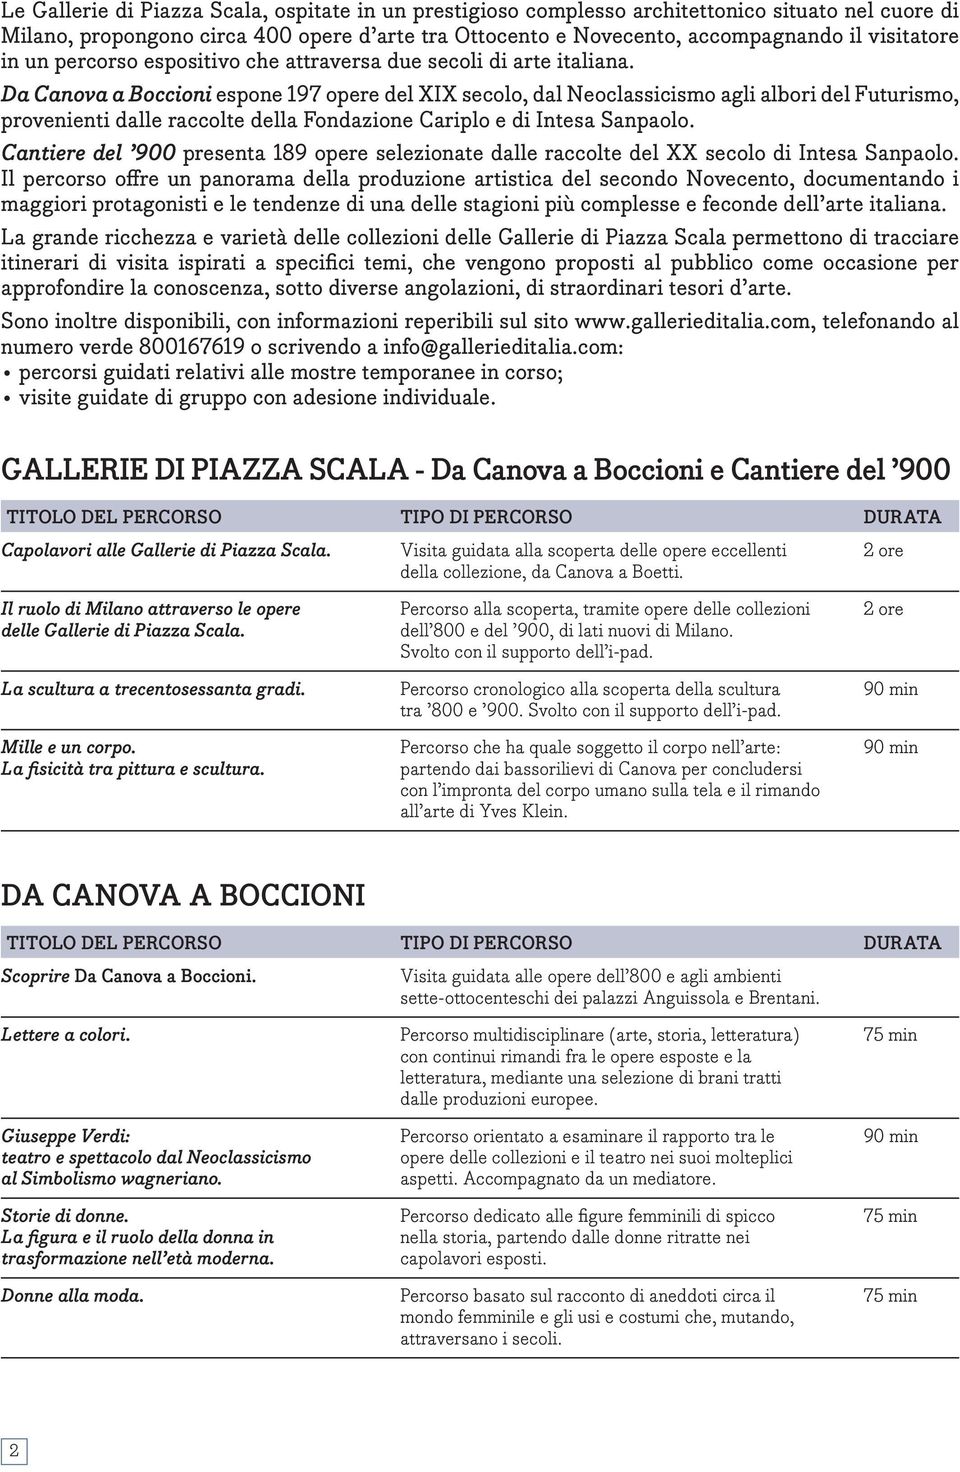 Da Canova a Boccioni espone 197 opere del XIX secolo, dal Neoclassicismo agli albori del Futurismo, provenienti dalle raccolte della Fondazione Cariplo e di Intesa Sanpaolo.